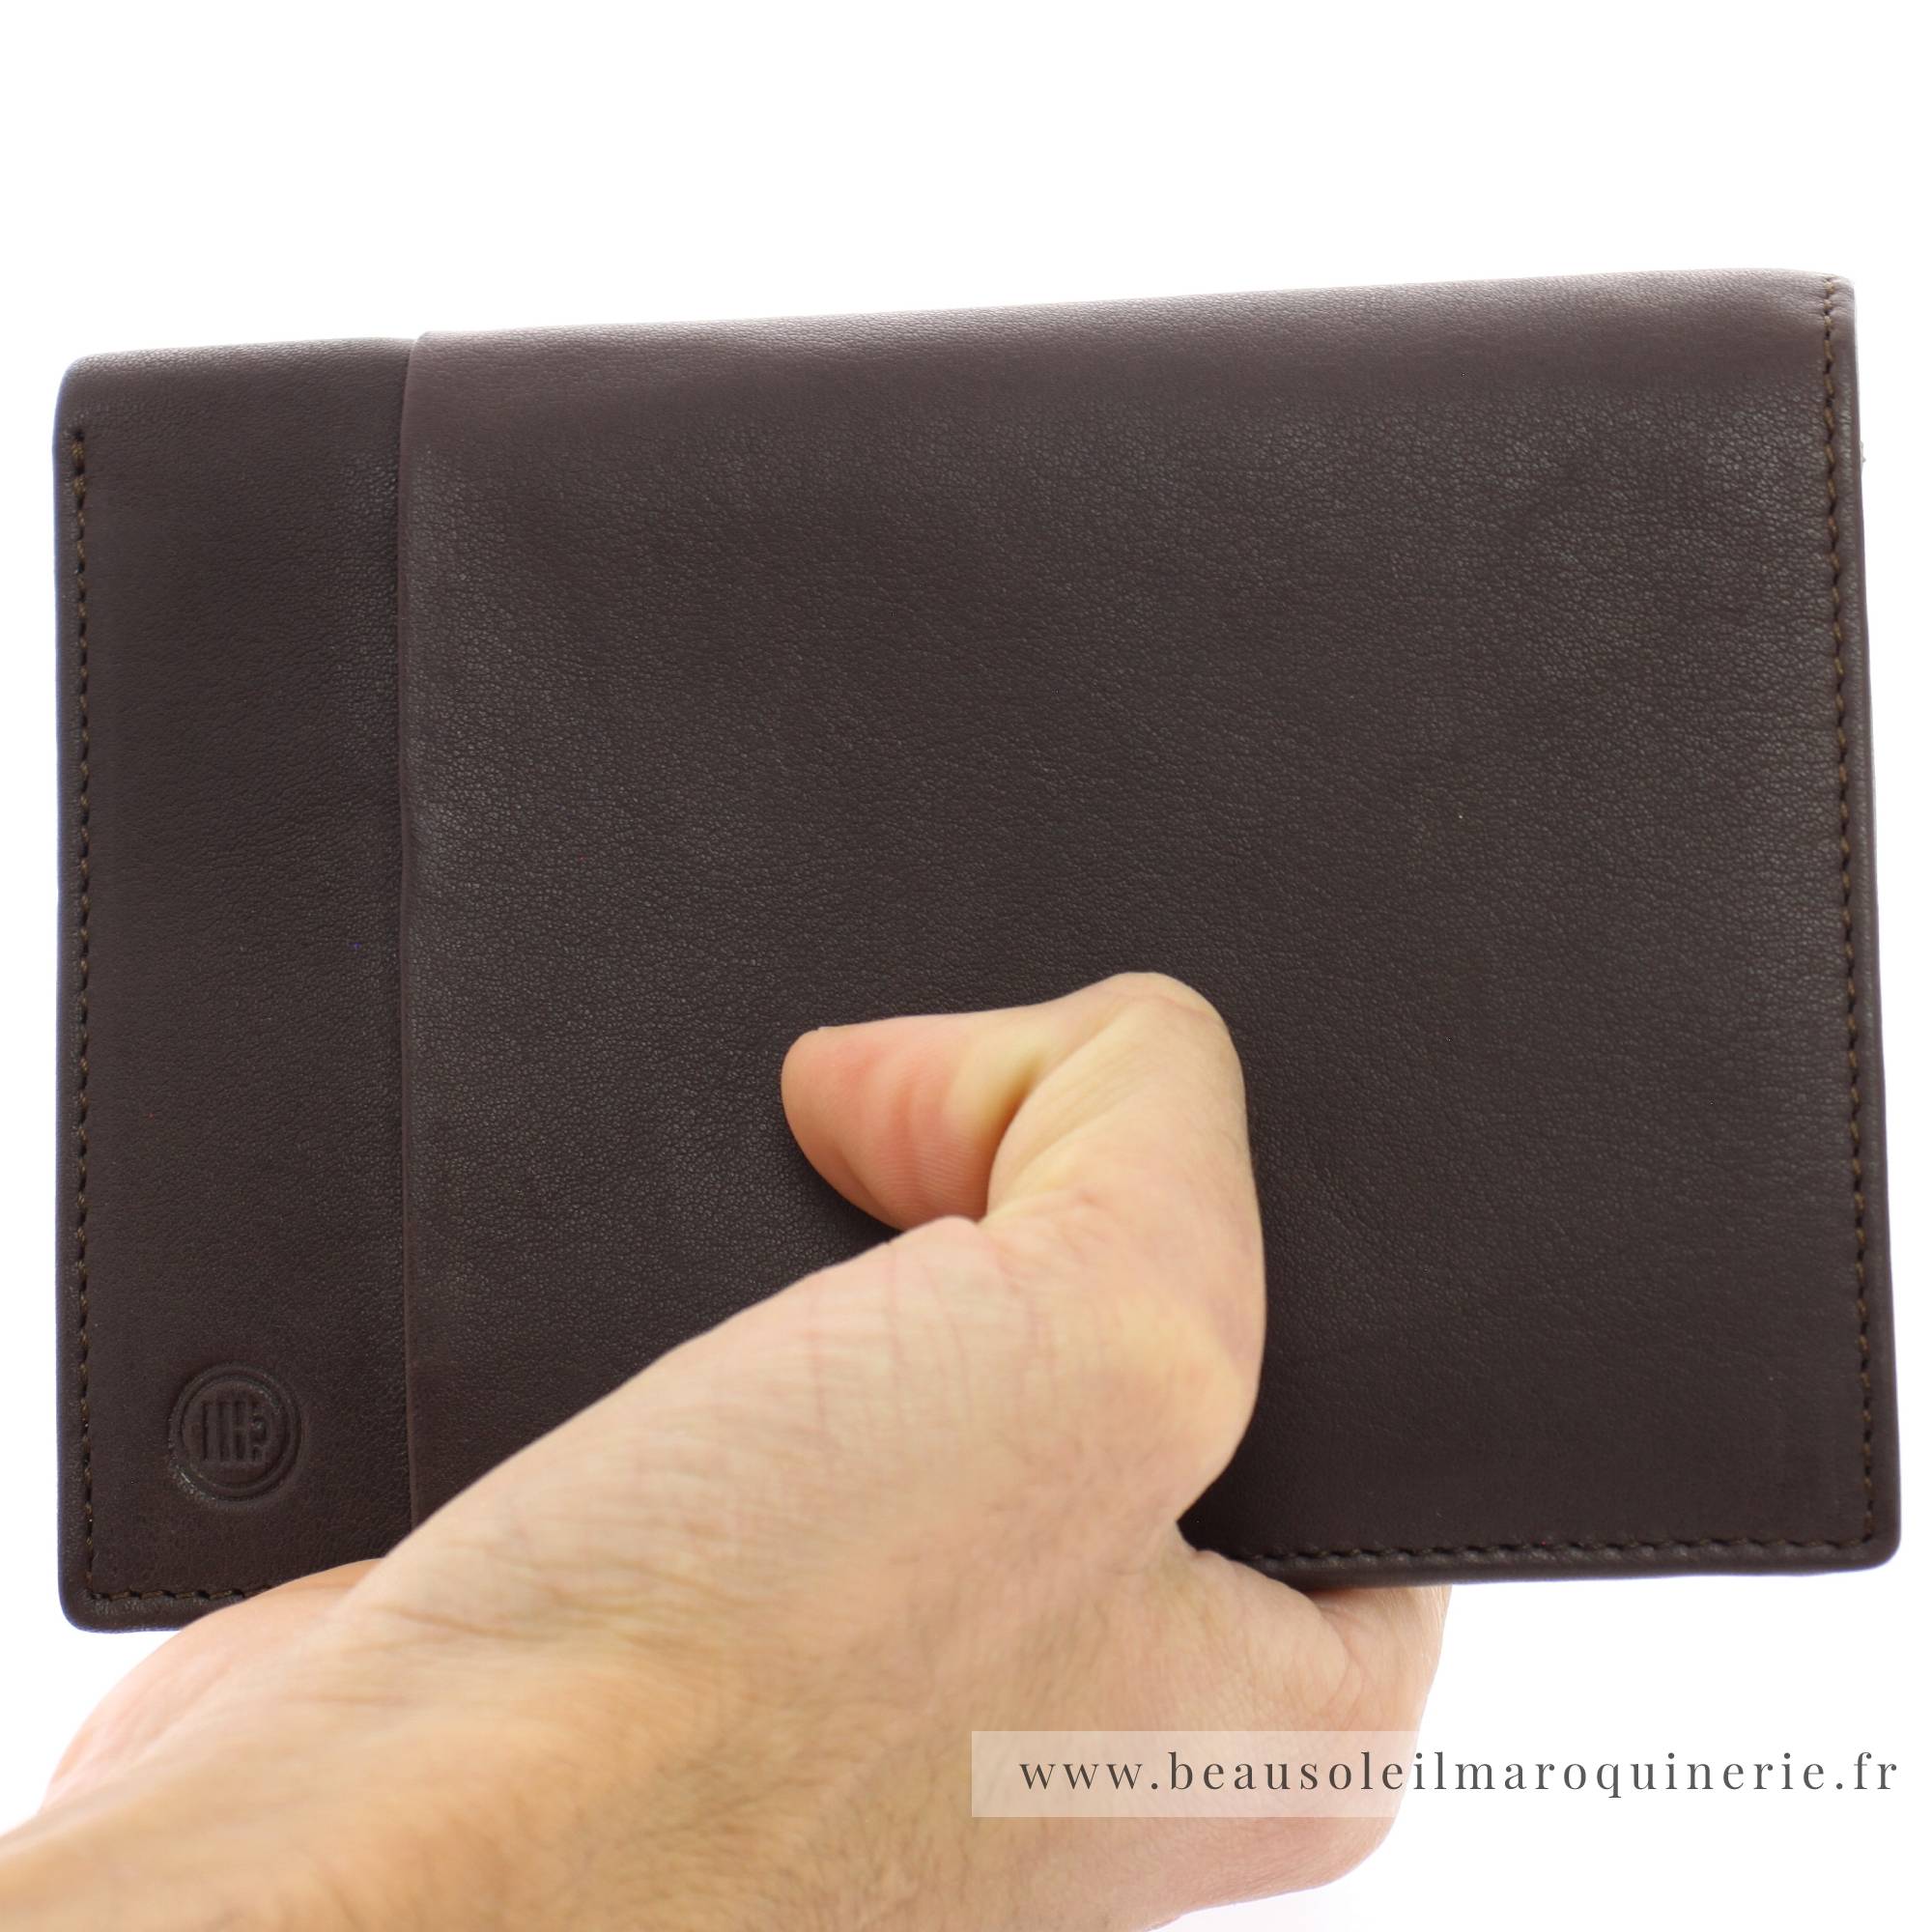 Portefeuille porte-cartes Serge Blanco en cuir ligne Anchorage, référence ANC21013 180 chocolat porté main